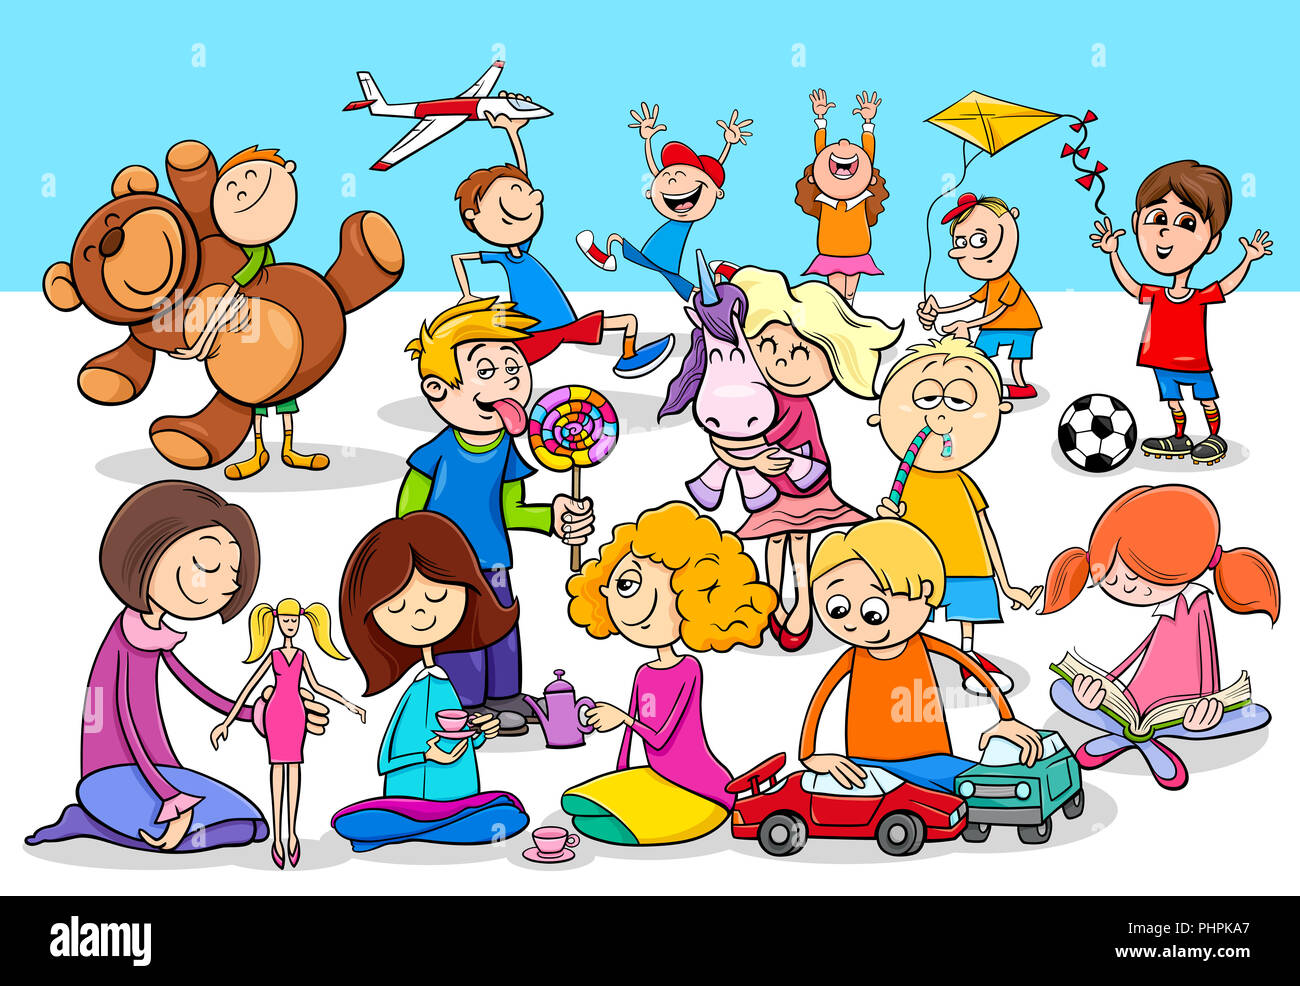 Groupe de personnages de dessins animés pour enfants ludique Banque D'Images